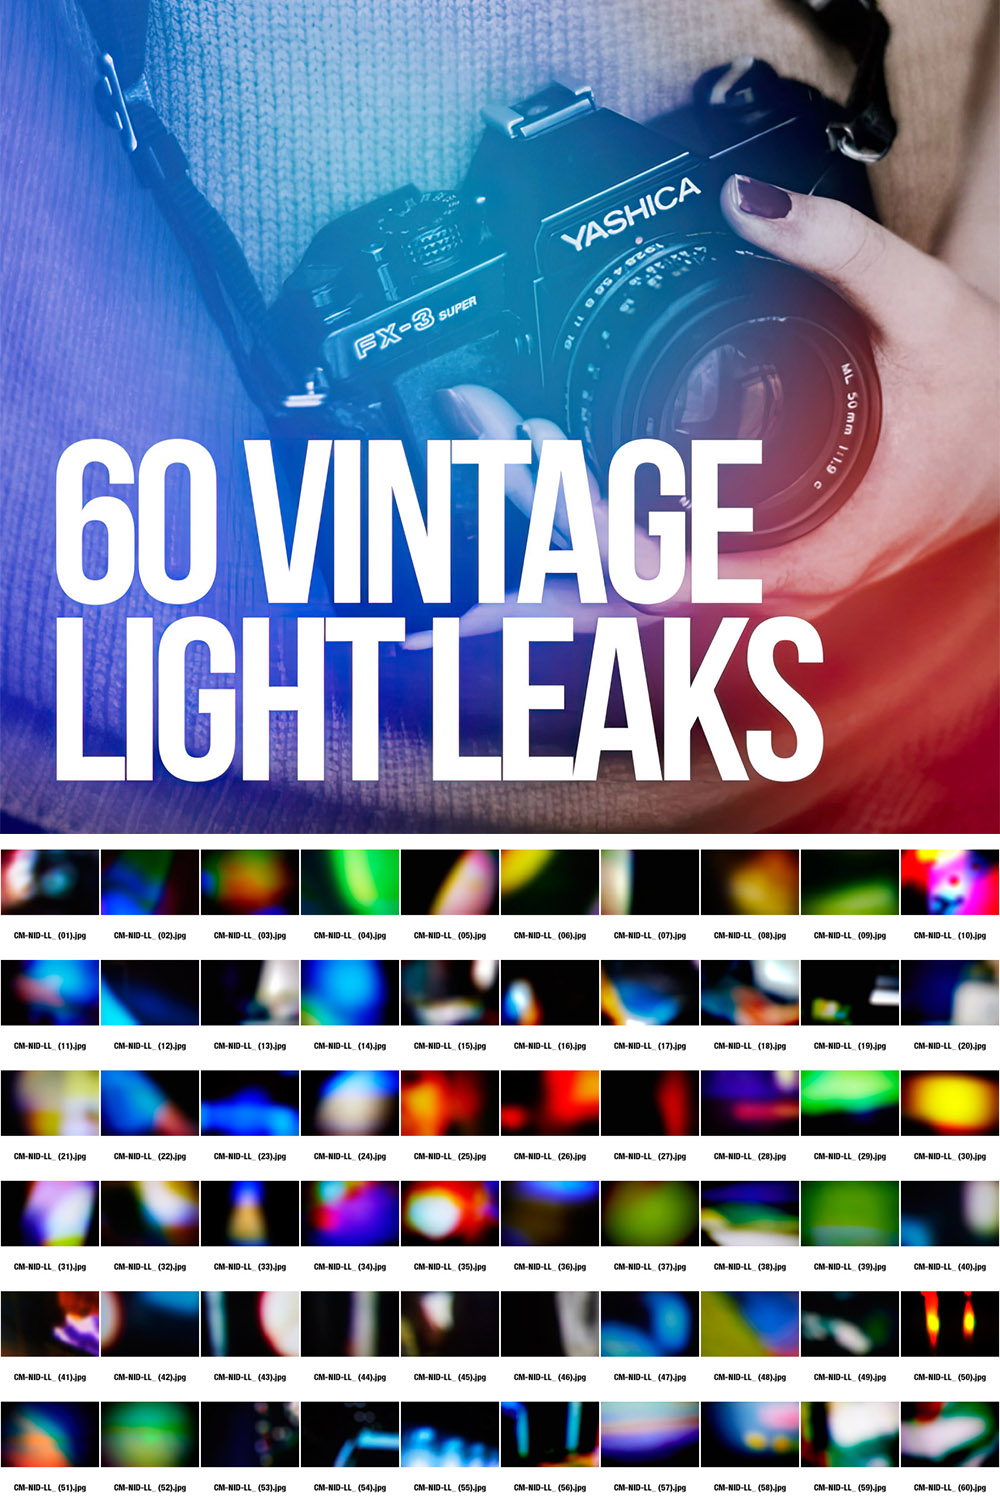 60 Vintage Light Leaks pinterest image.